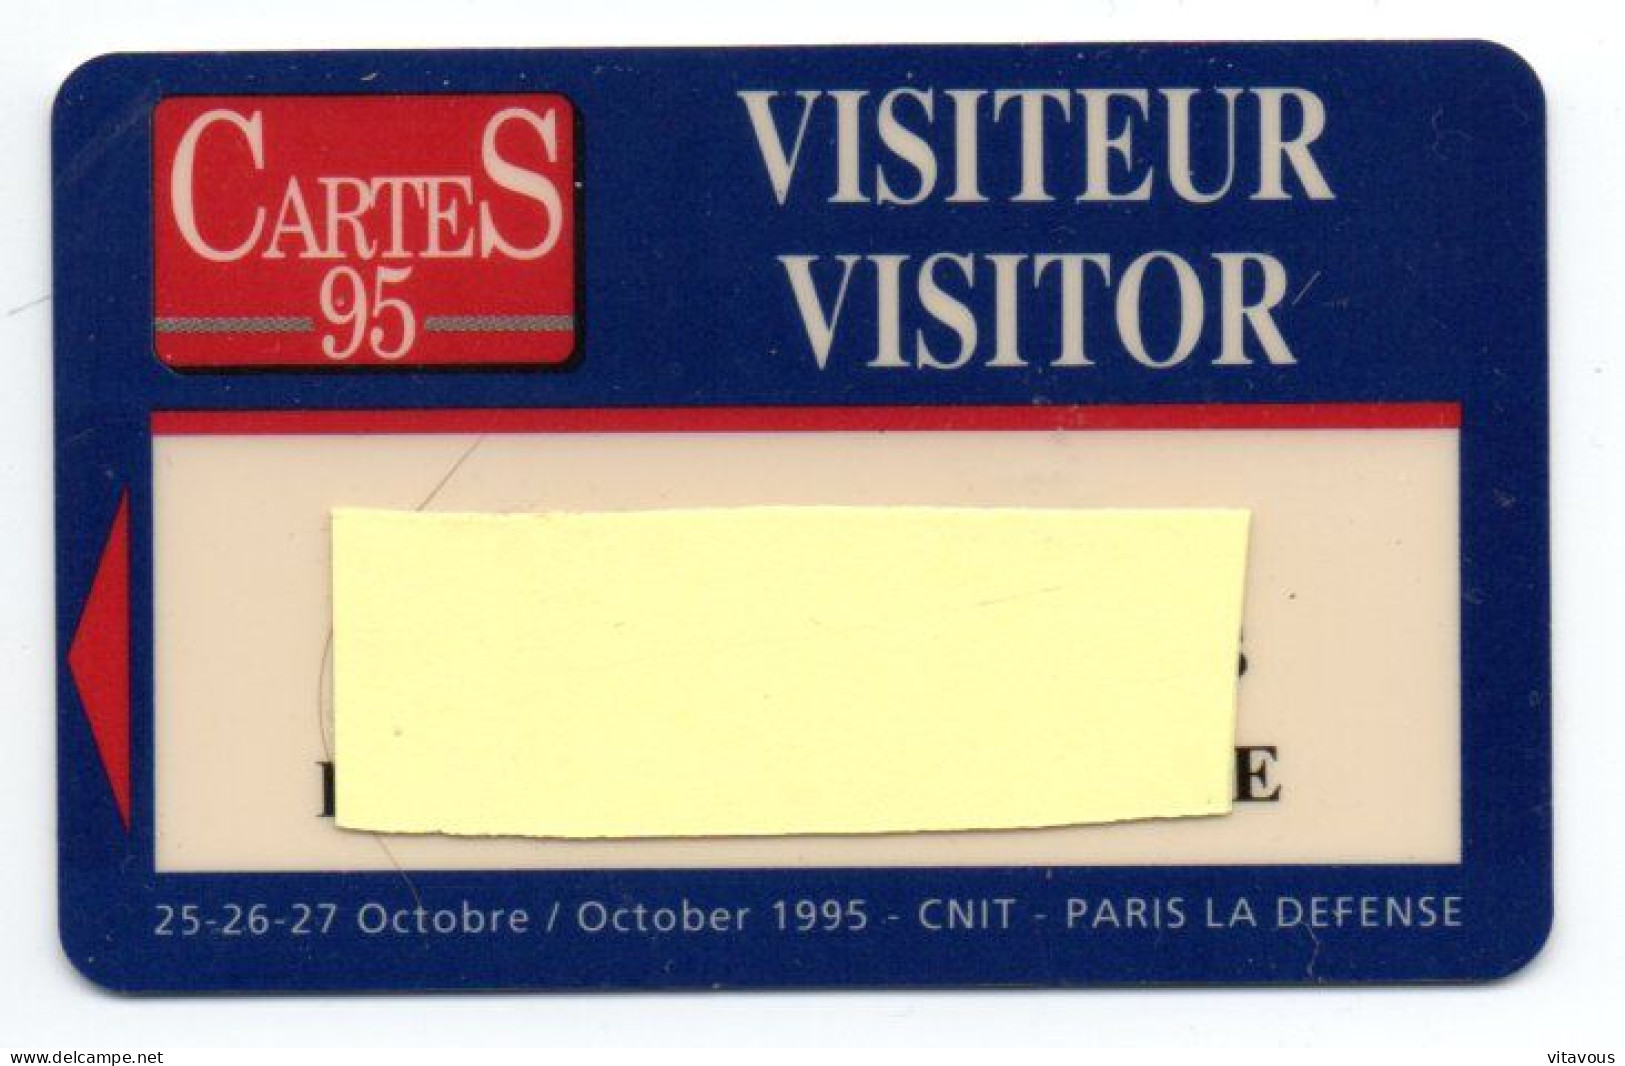 Carte Salon CarteS 95  France Paris Card  Magnétique Karte TBE (F 617) - Cartes De Salon Et Démonstration